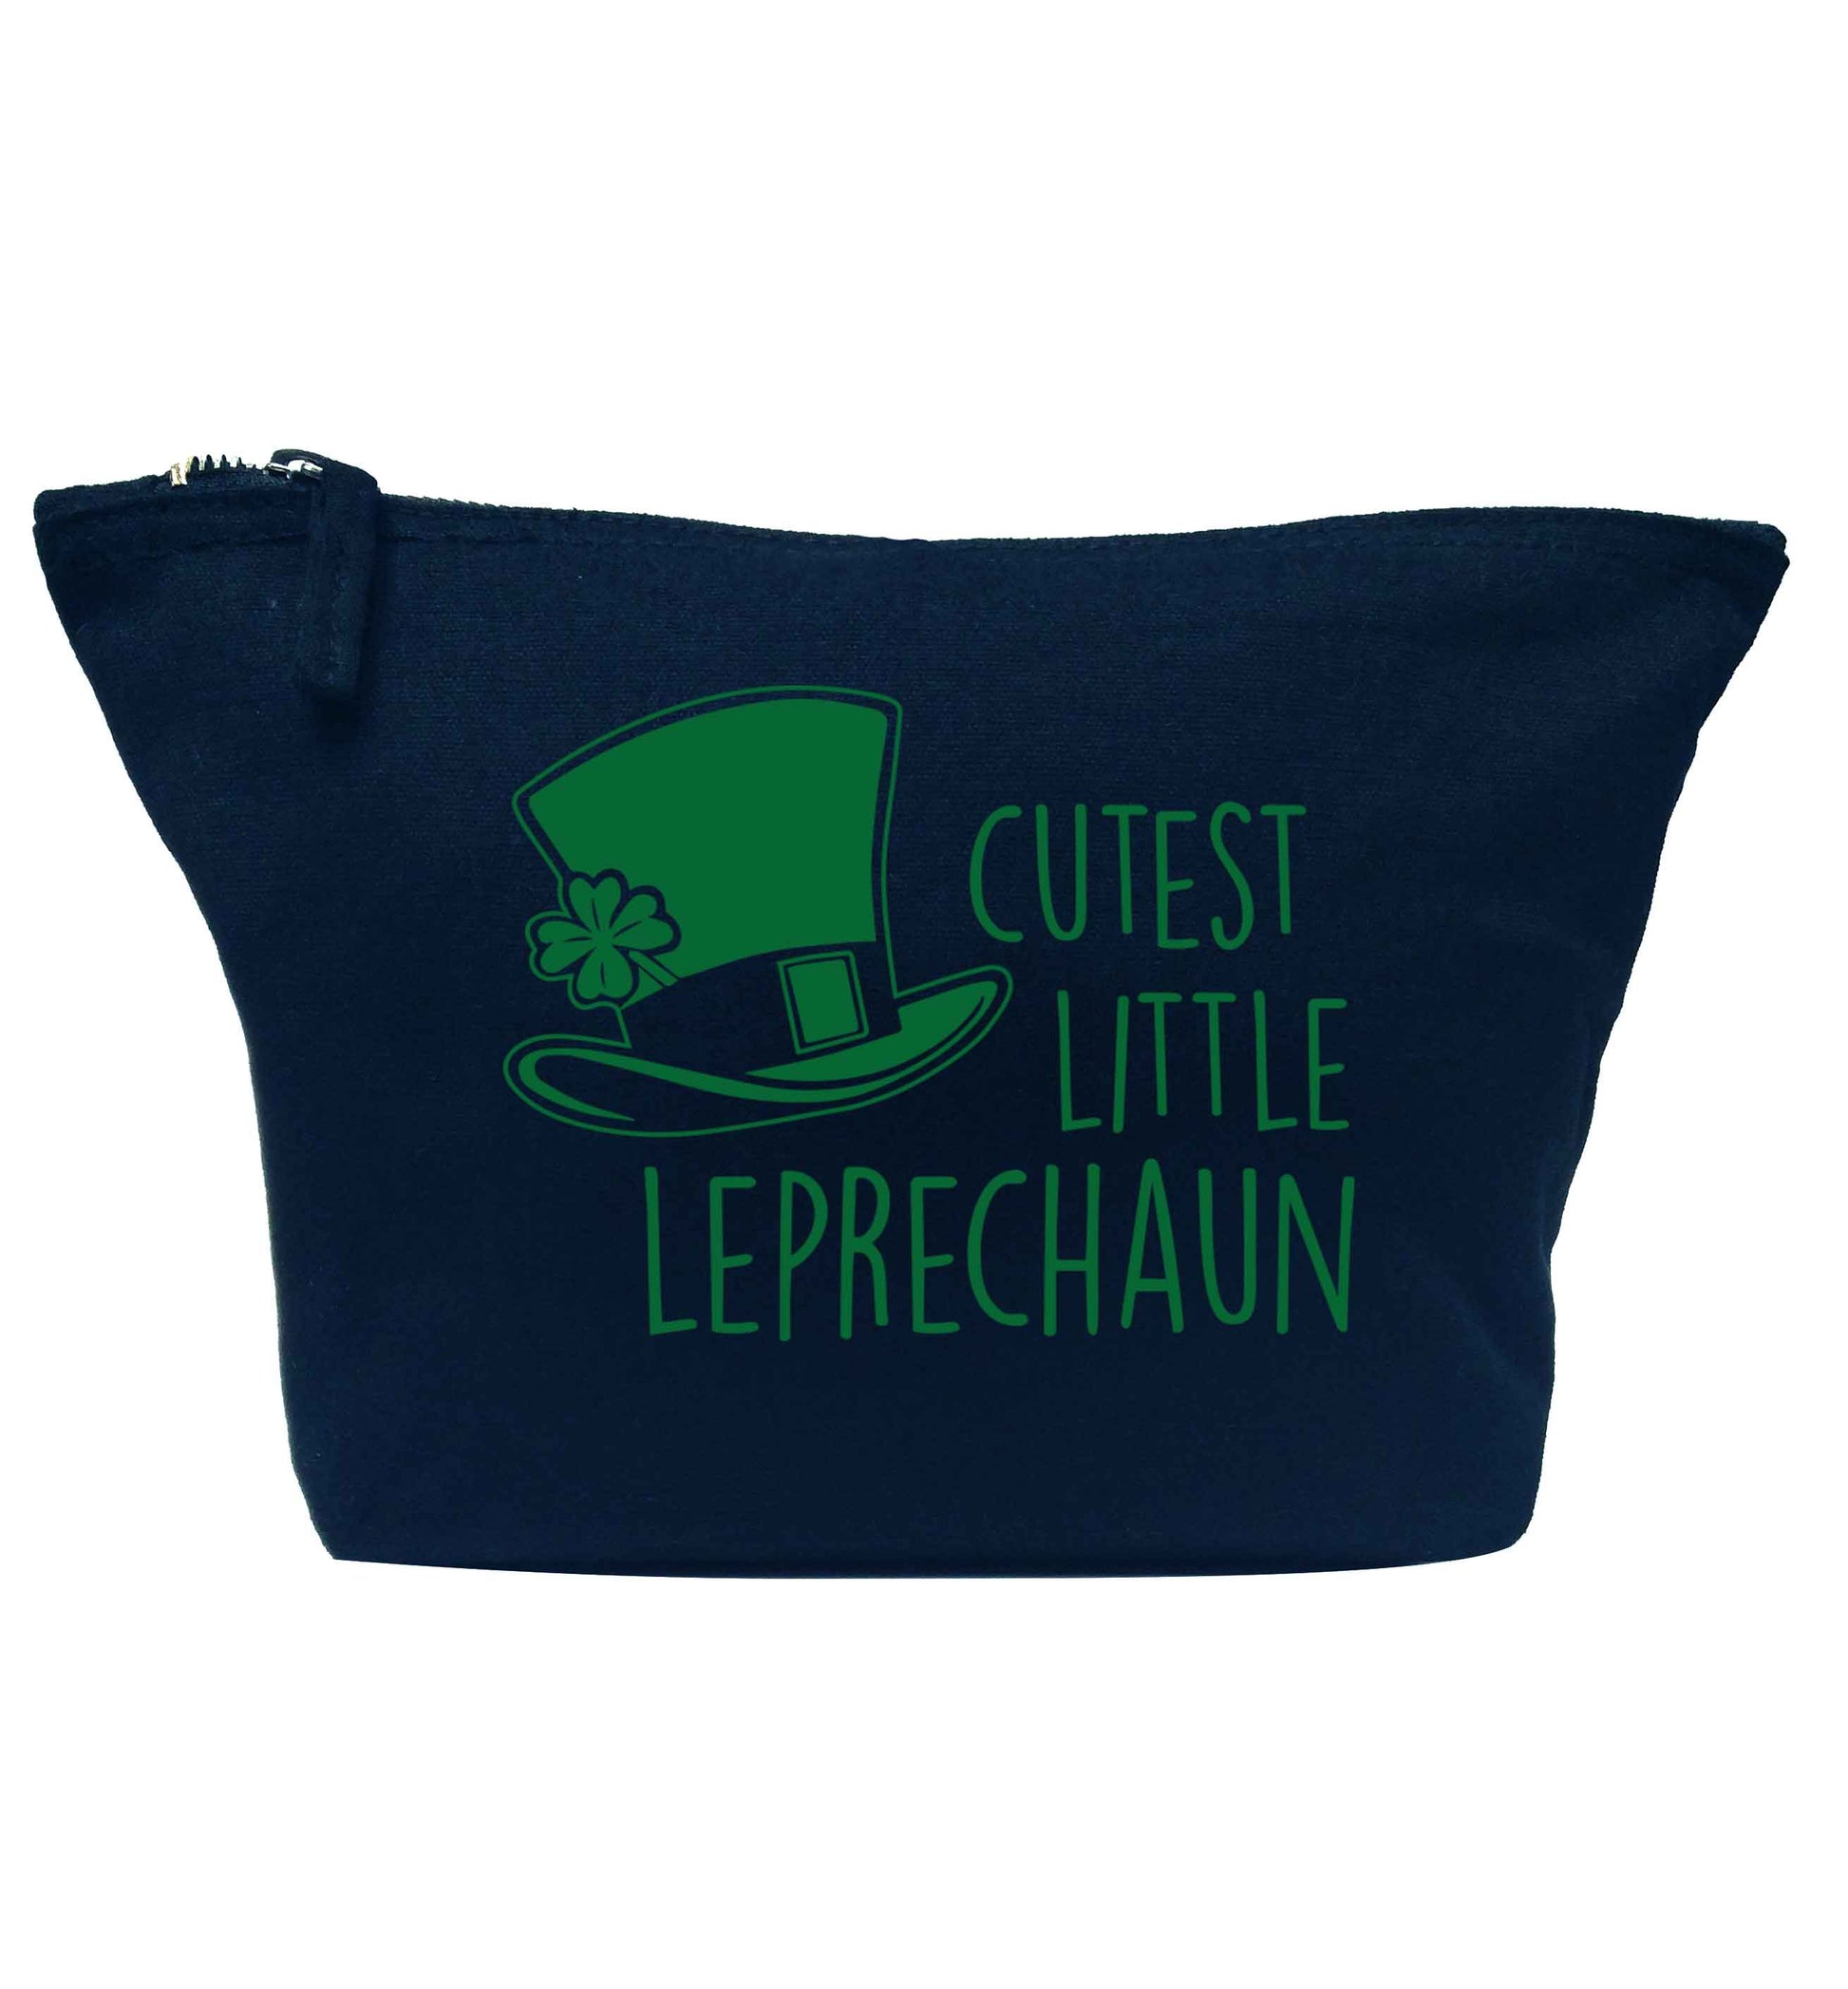 Cutest little leprechaun navy makeup bag